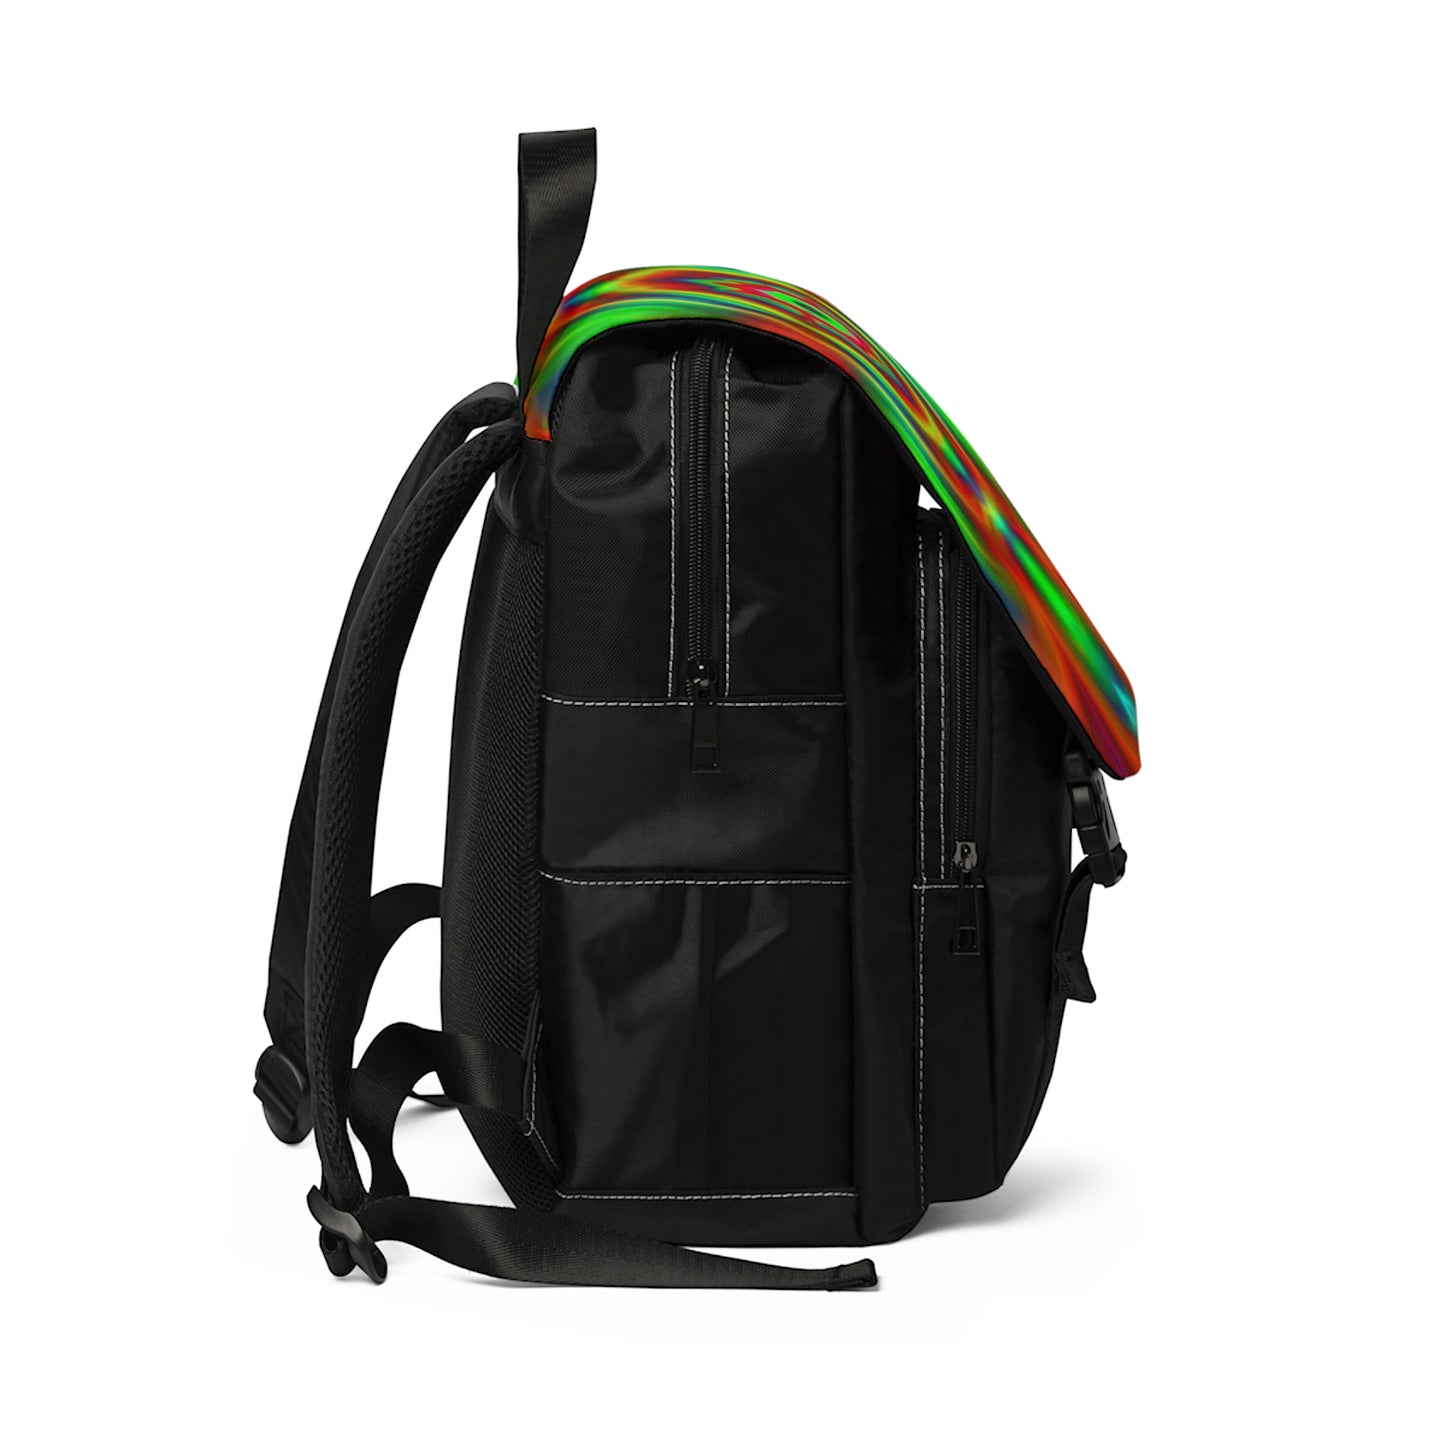 Willadean - Psychedelic Shoulder Travel Backpack Bag